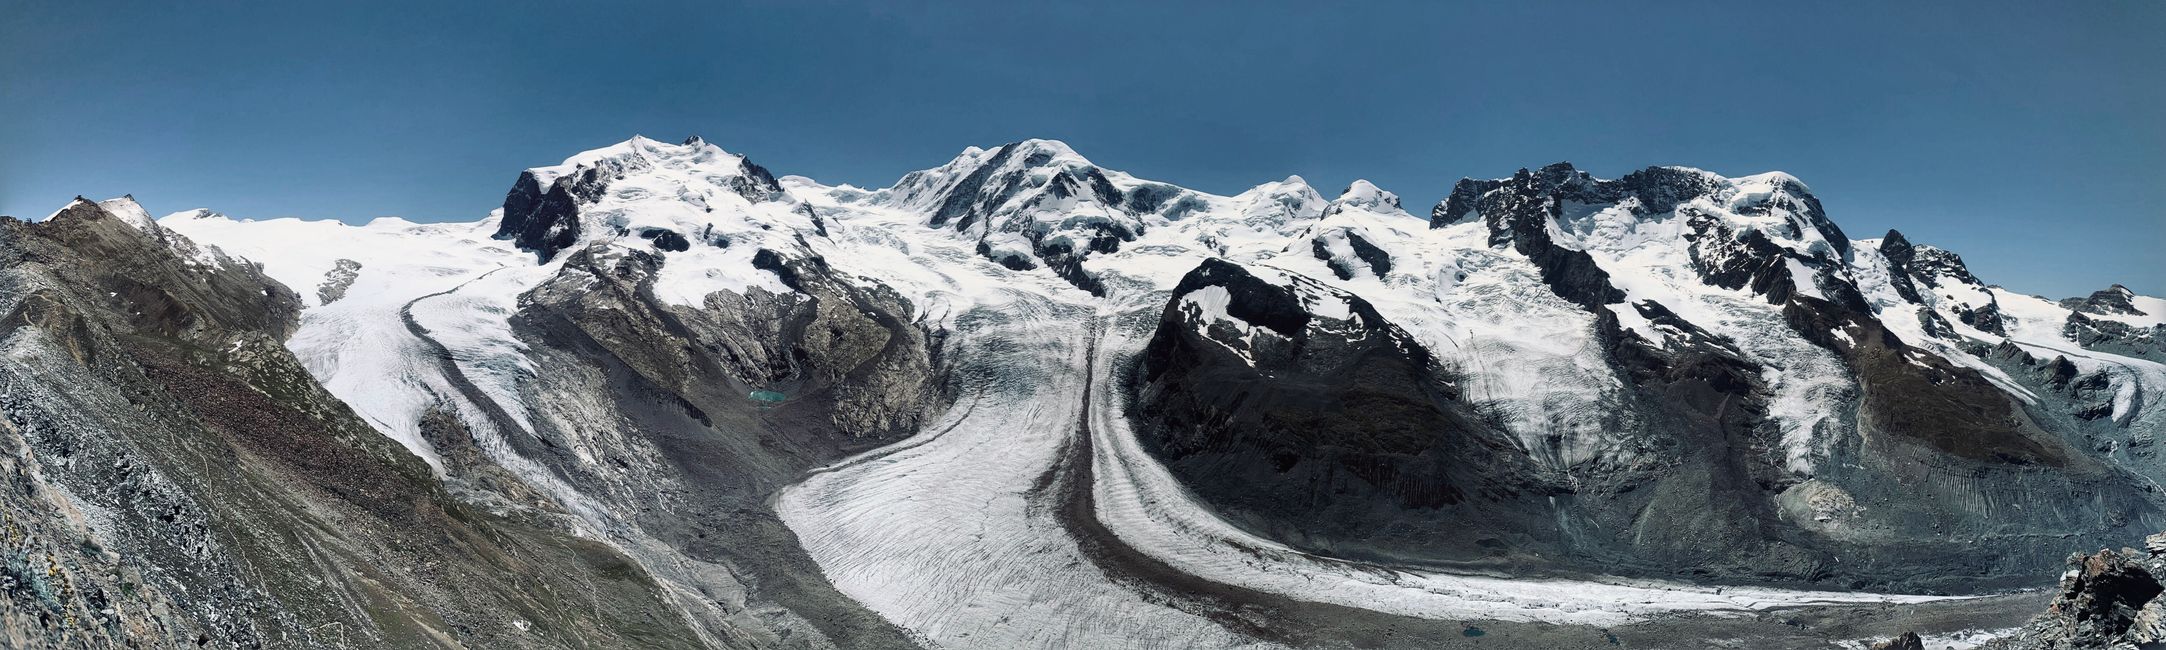 Darum leistet sich der Zermatt-Besucher den Abstecher zum Gornergrat